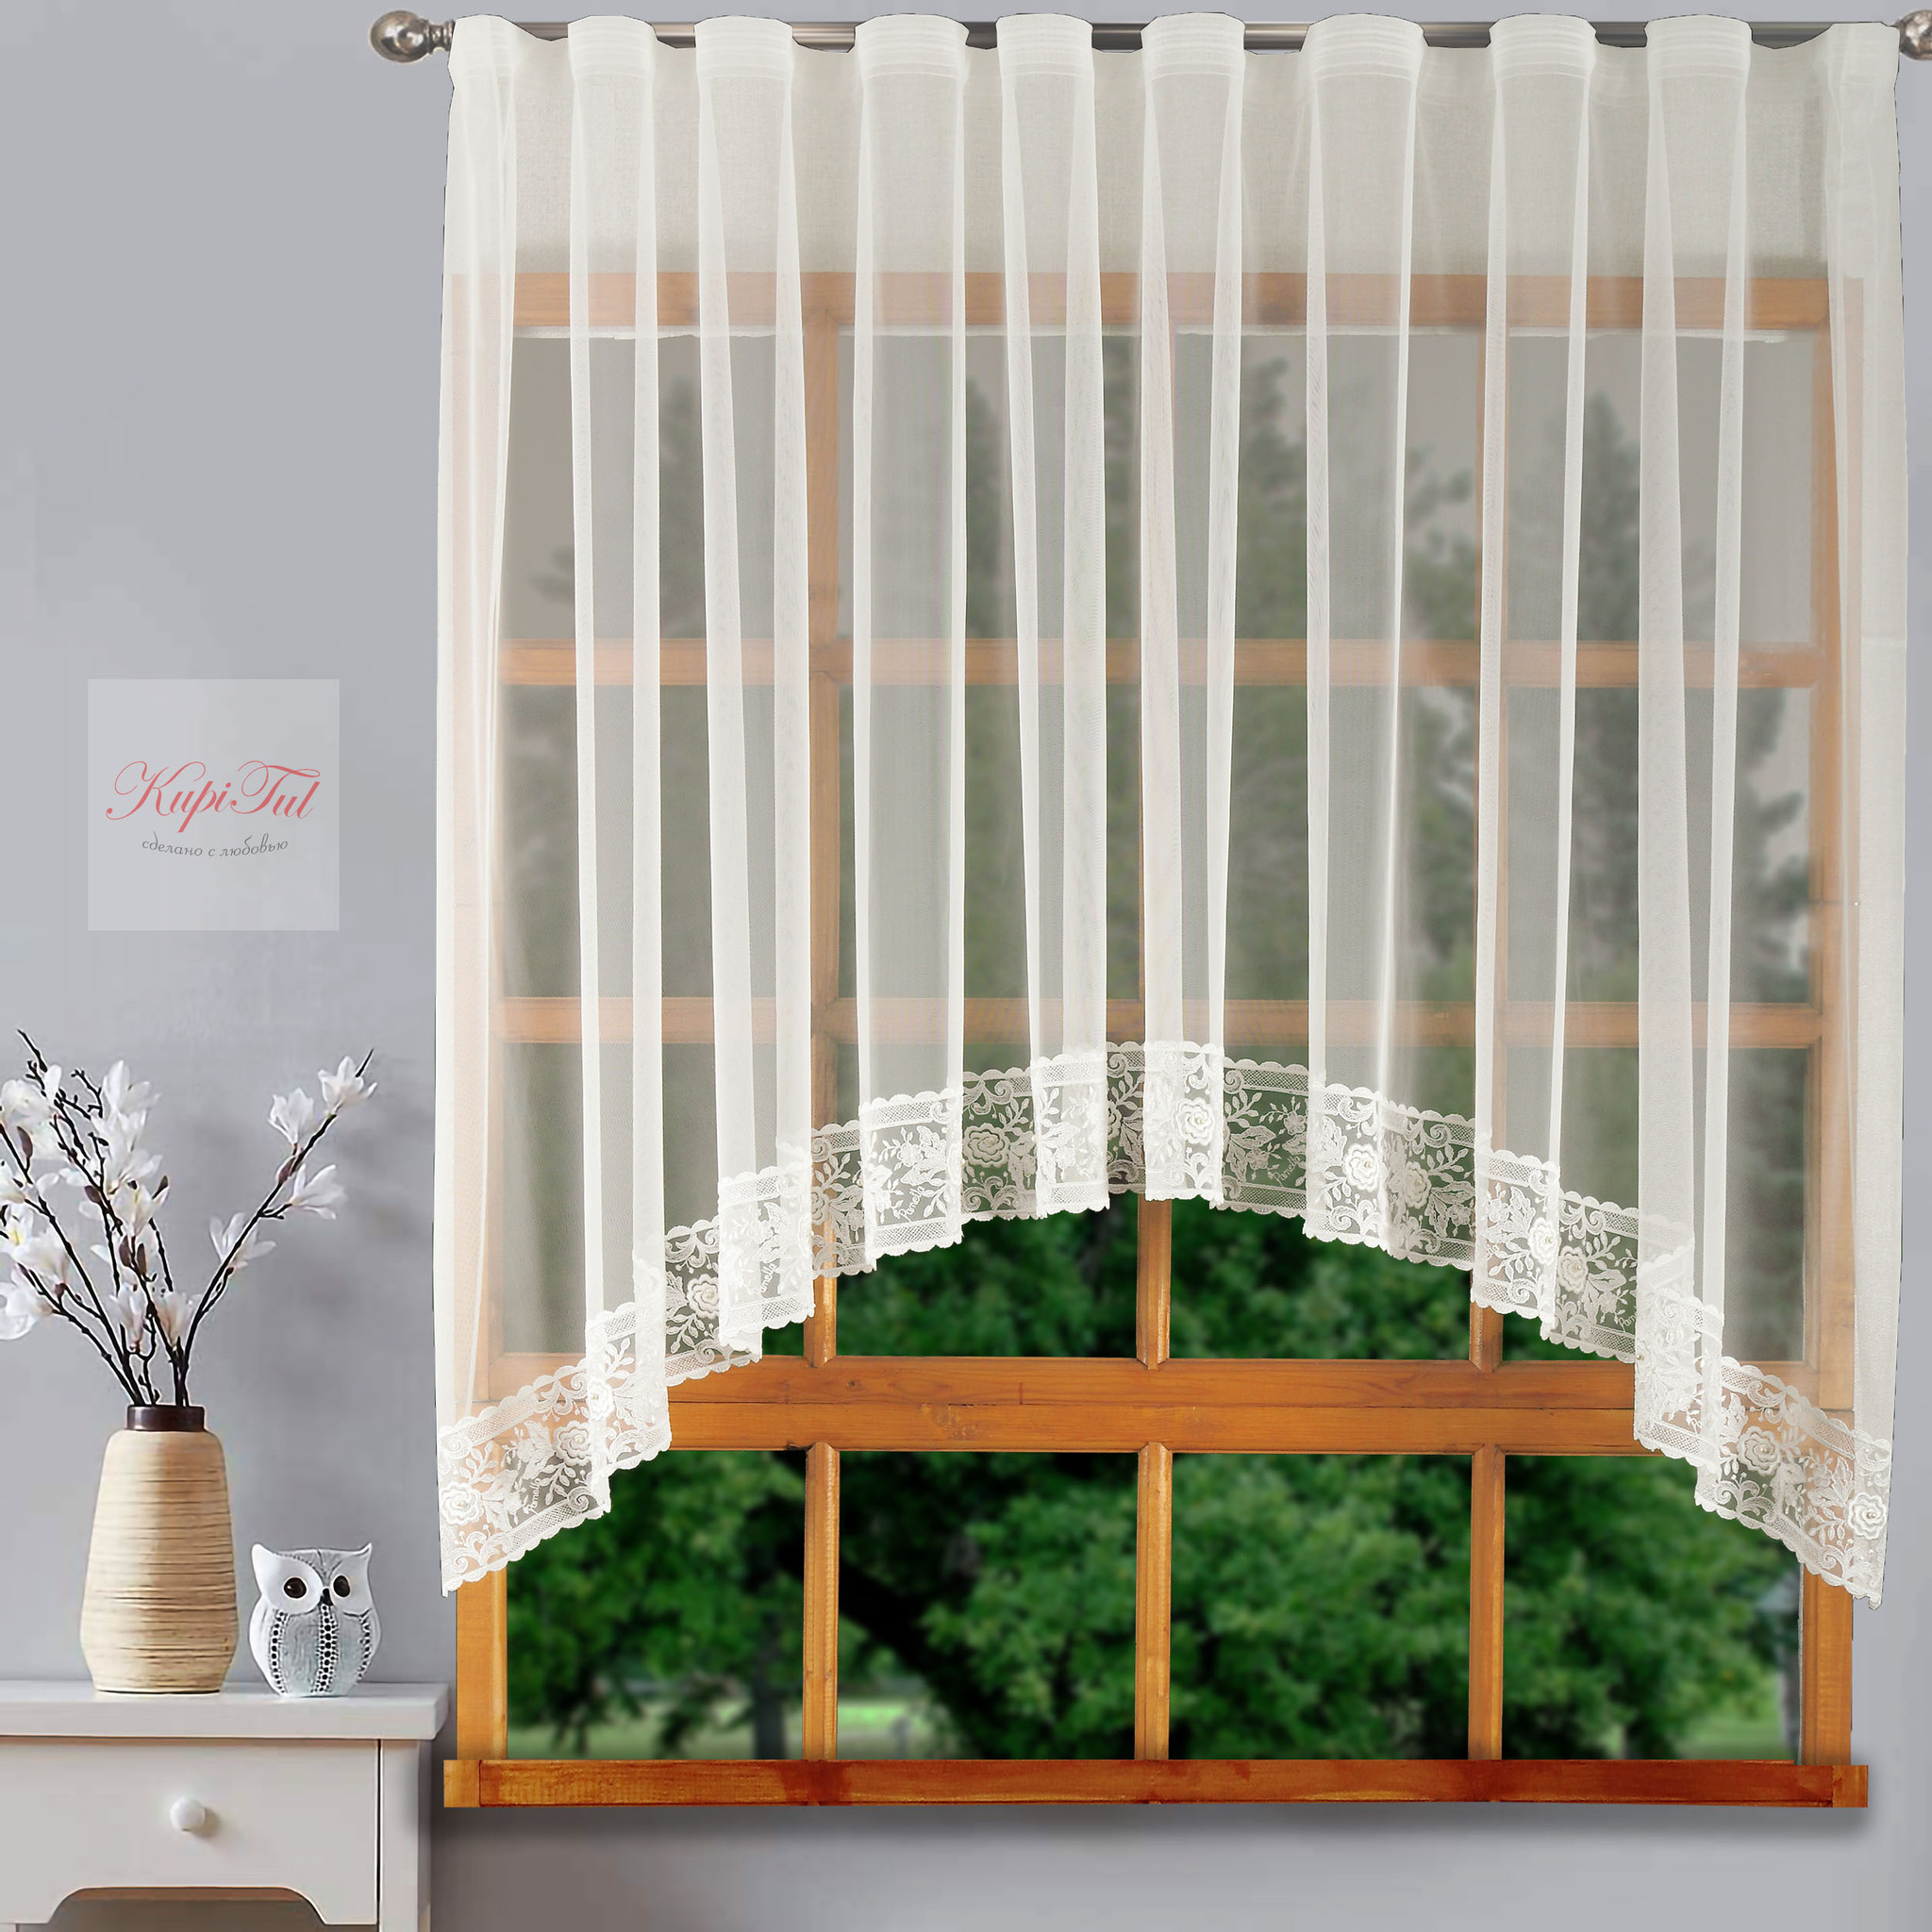 Купить шторы арки на окна кухни - интернет-магазин ДомАлетто